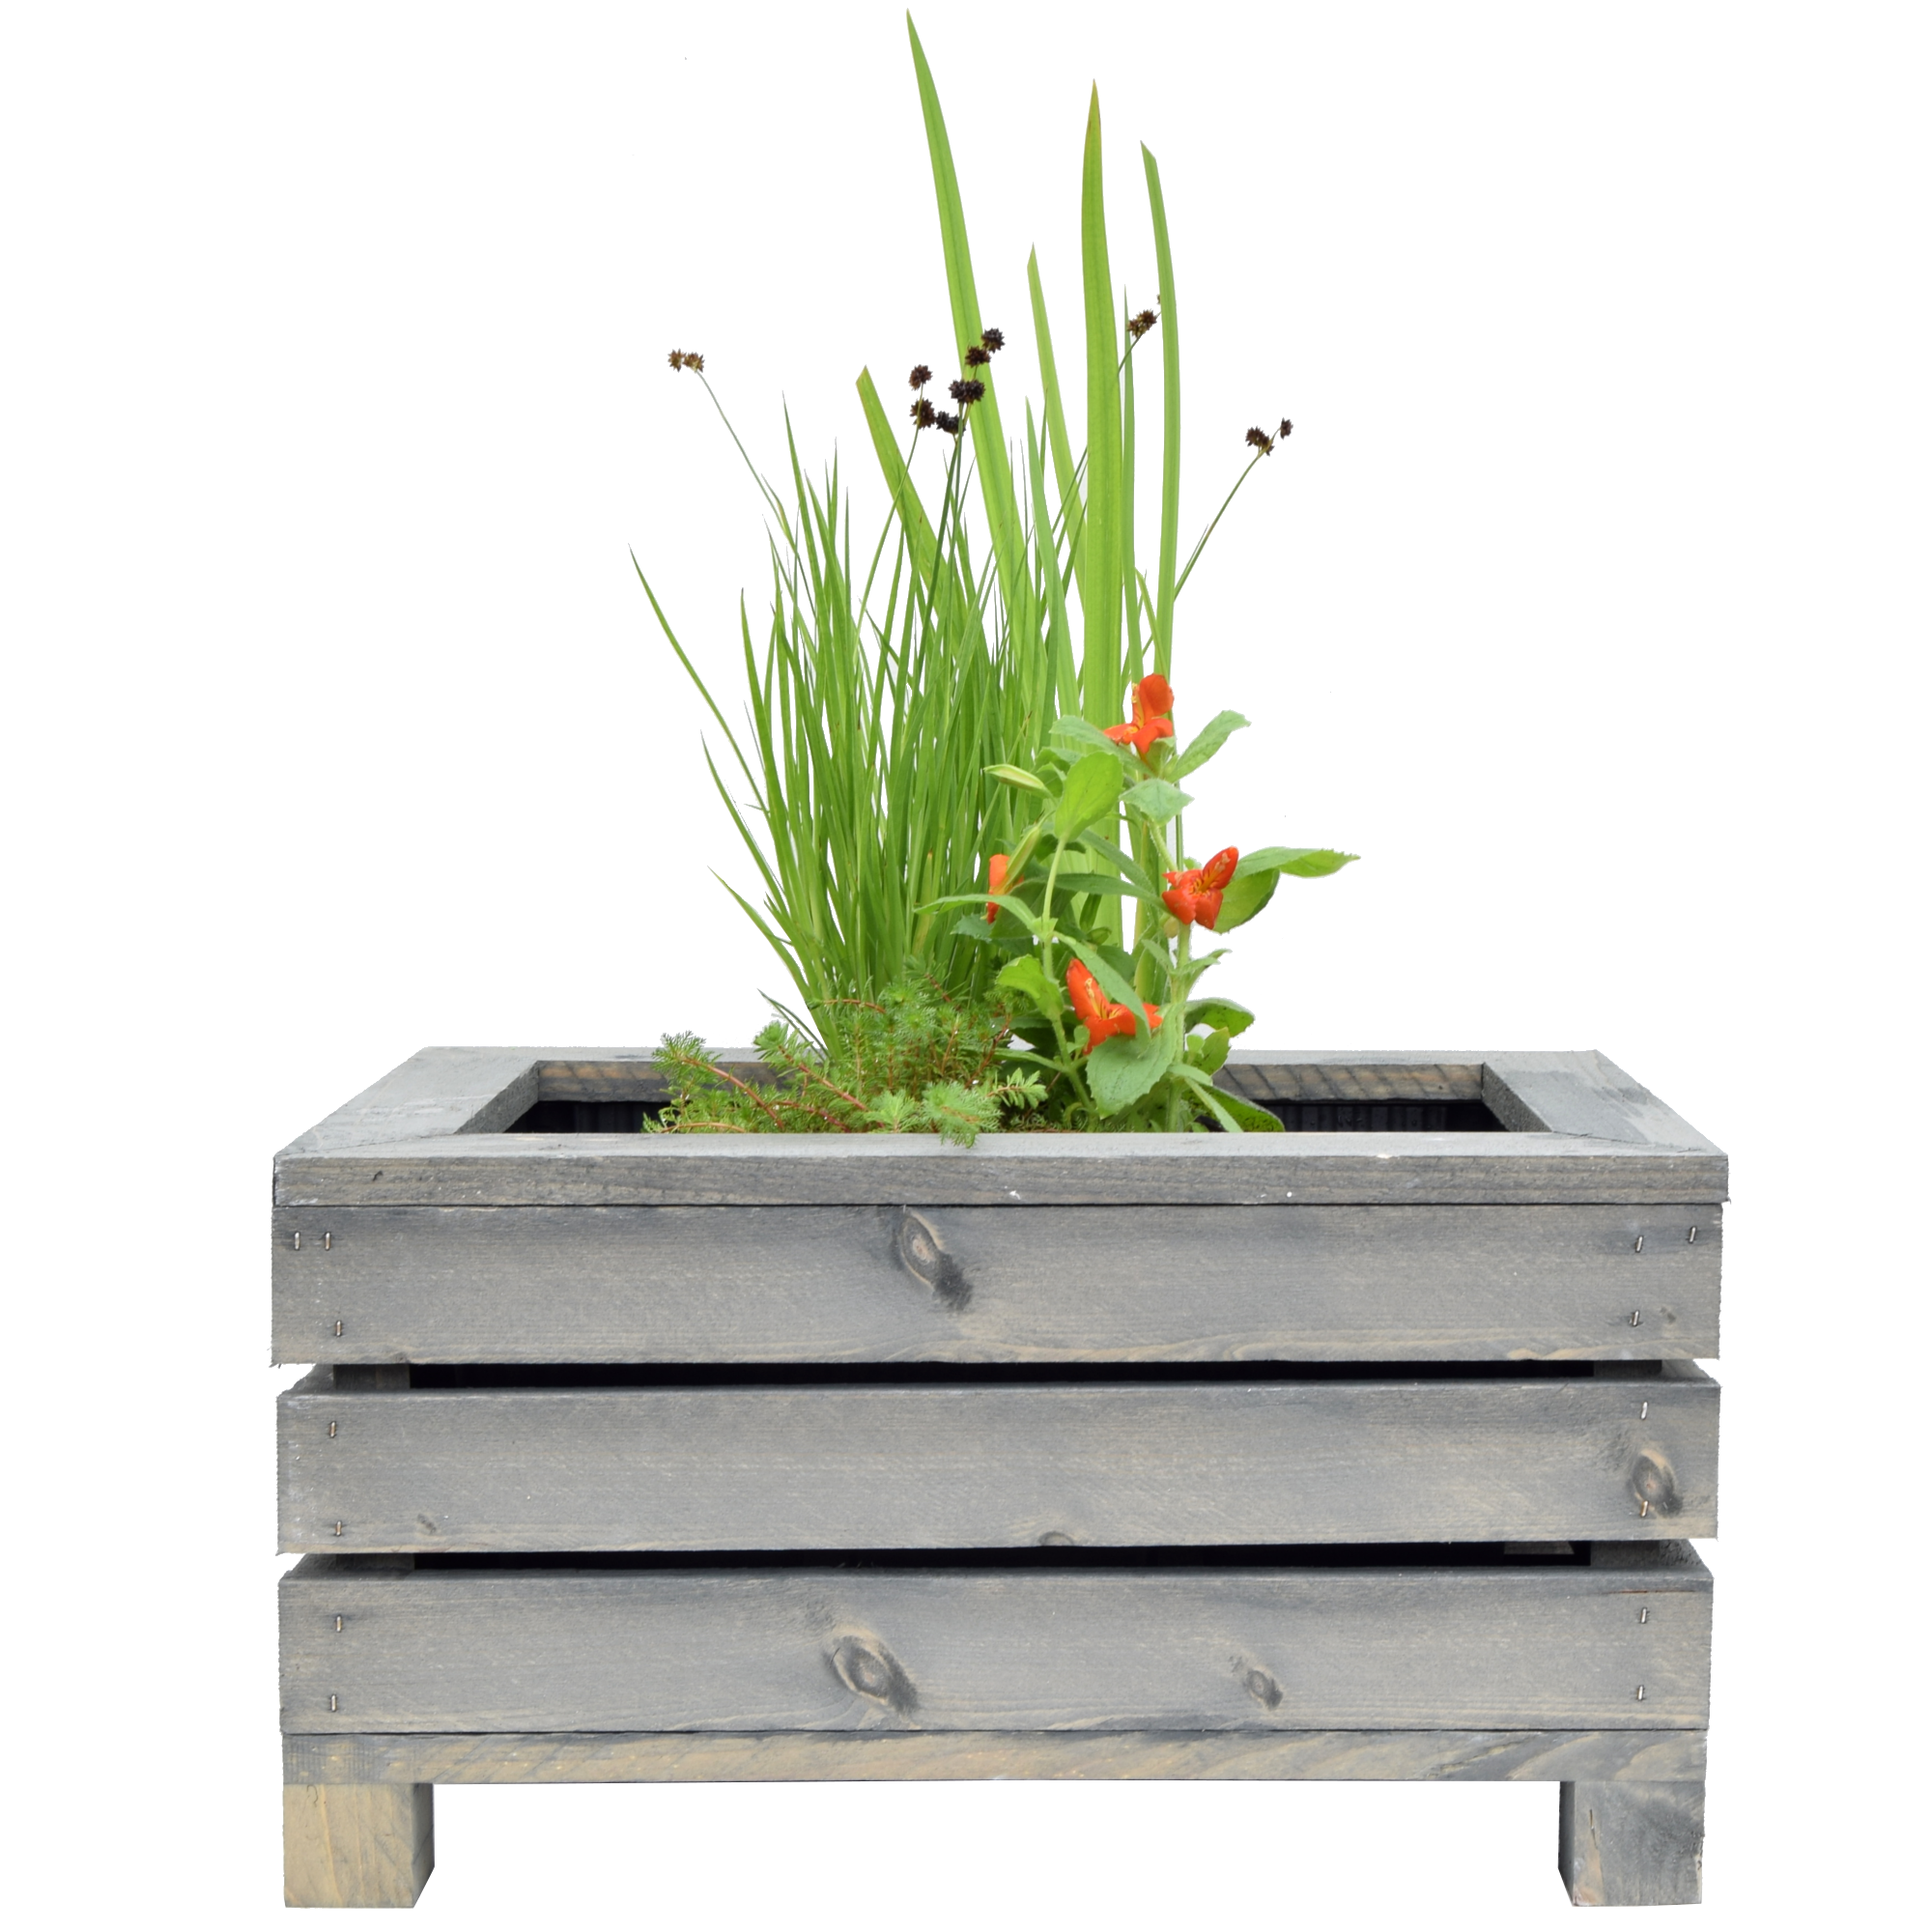 Miniteich-Set mit 4 Pflanzen und Teichkiste grau 45 x 32 x 21 cm + product picture